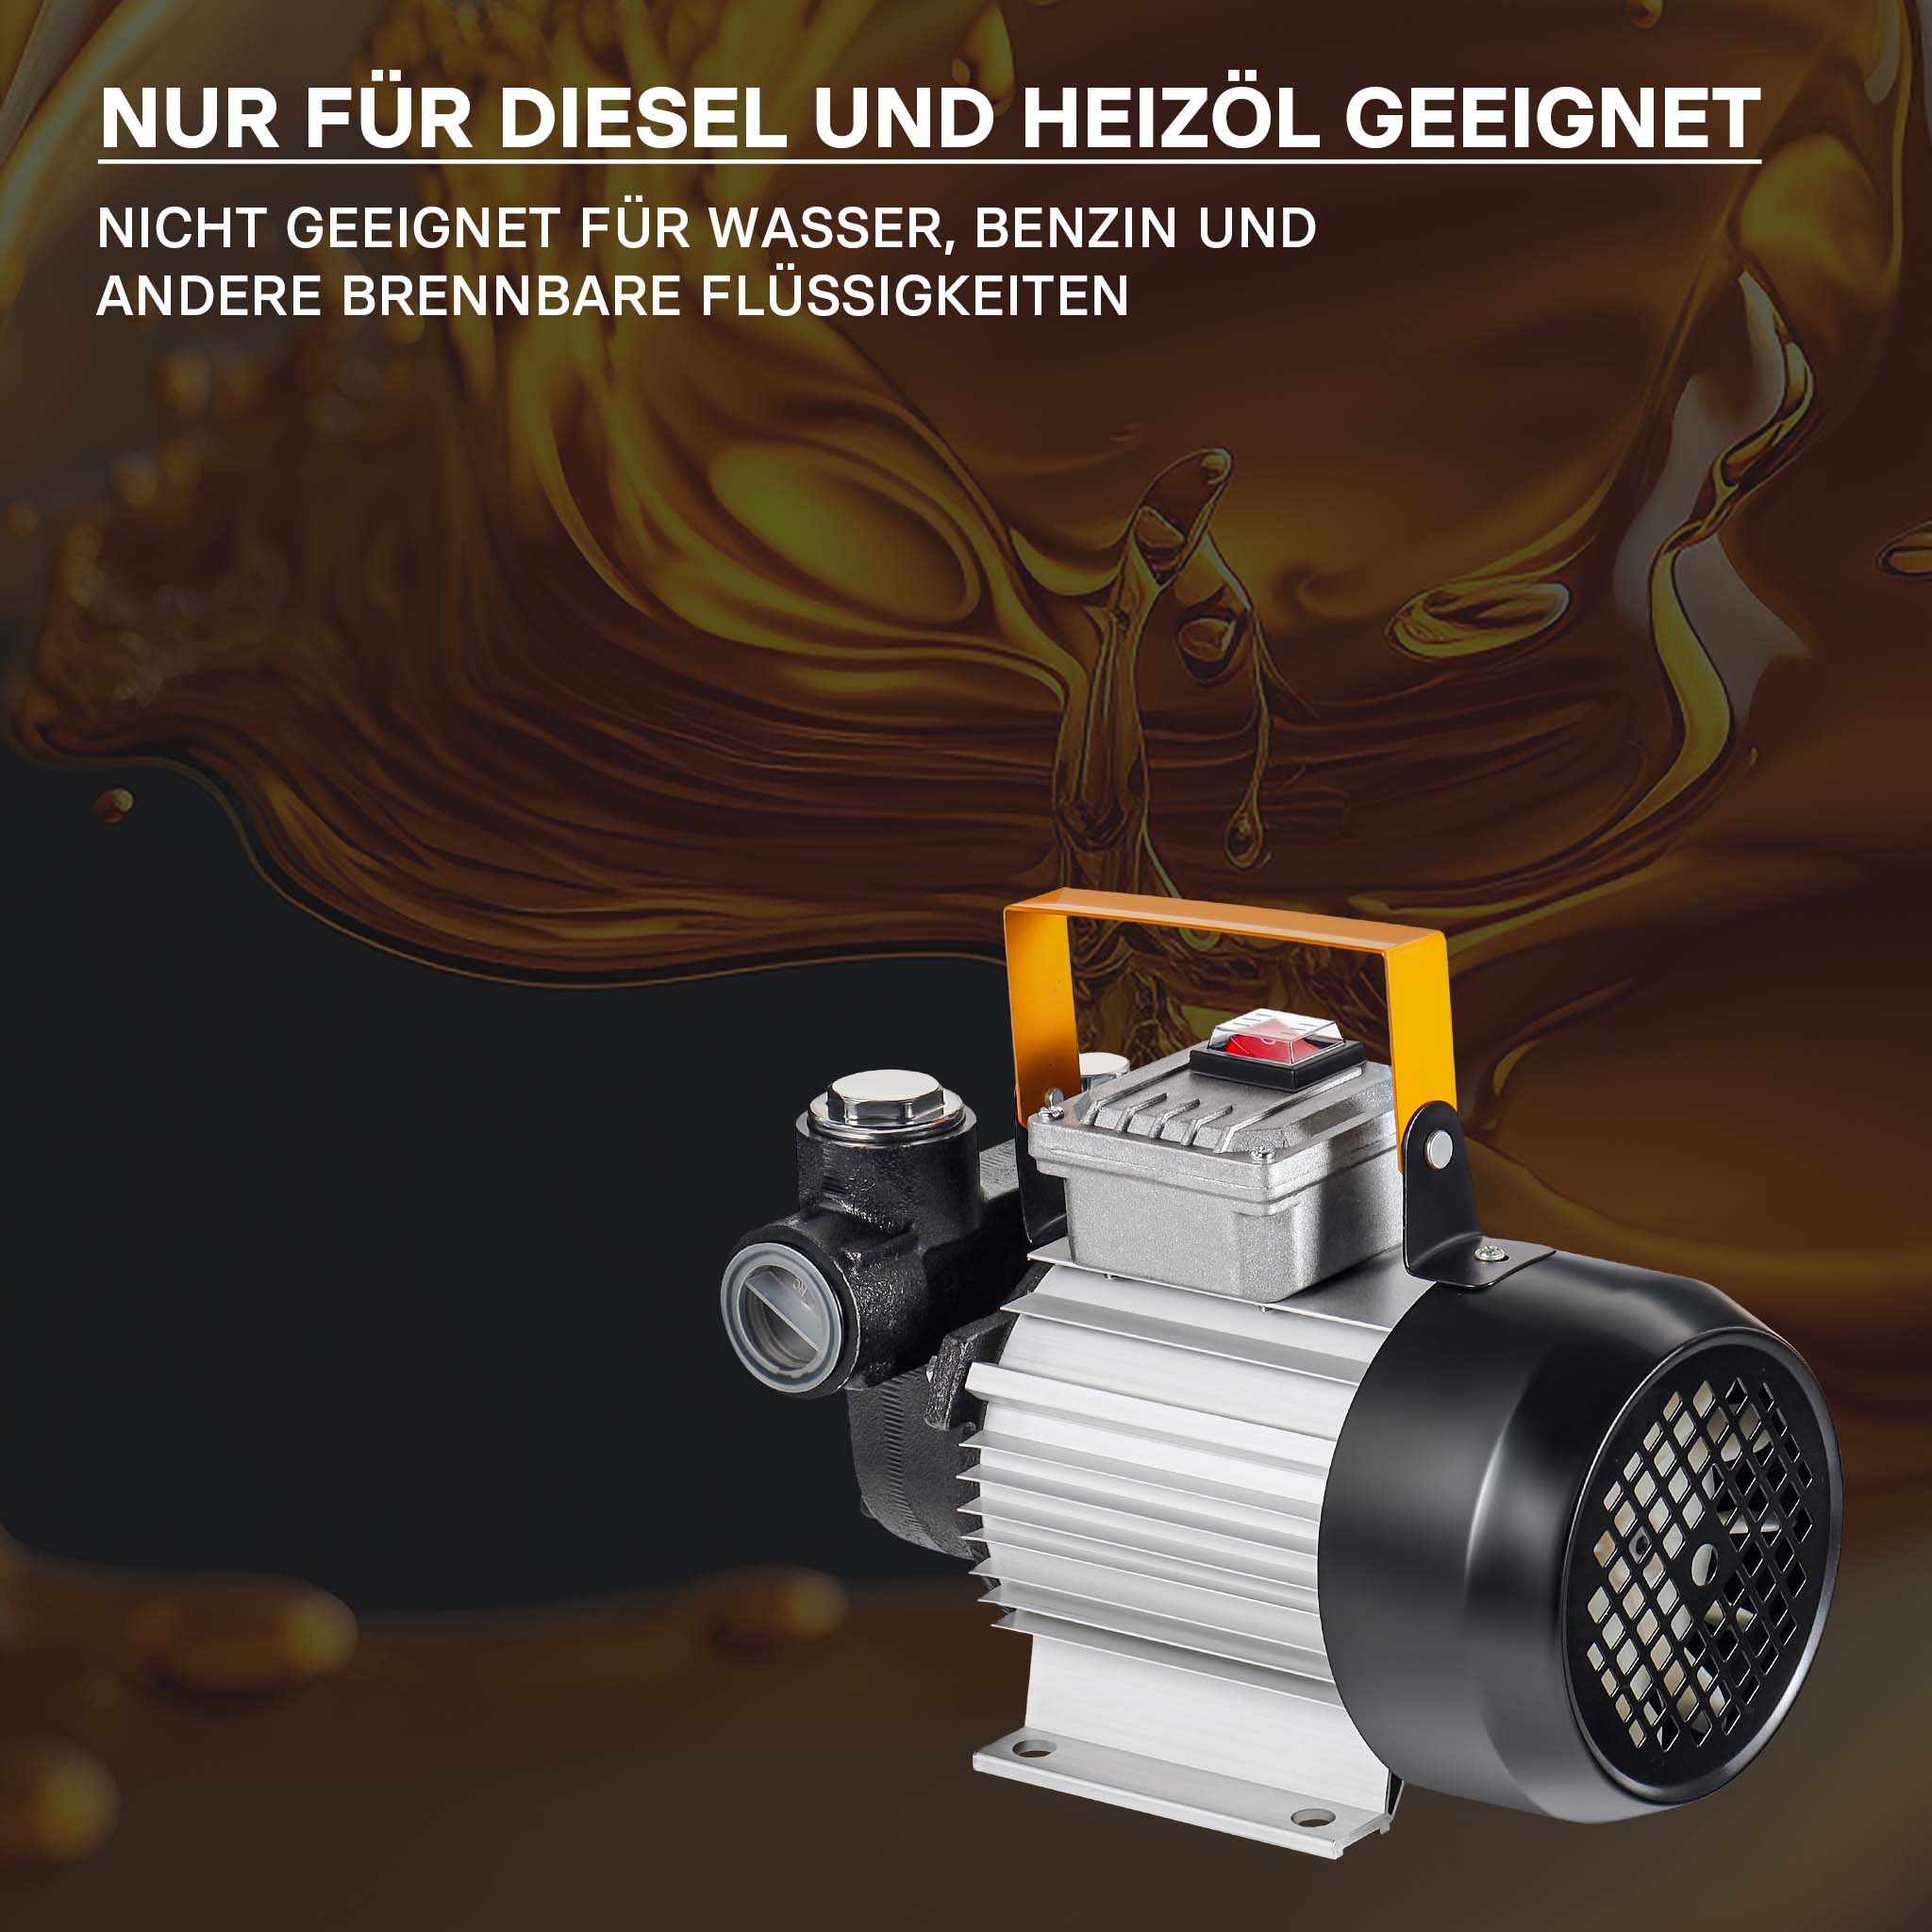 Pompa autoadescante per diesel e nafta con 230V 550W per 20-60l